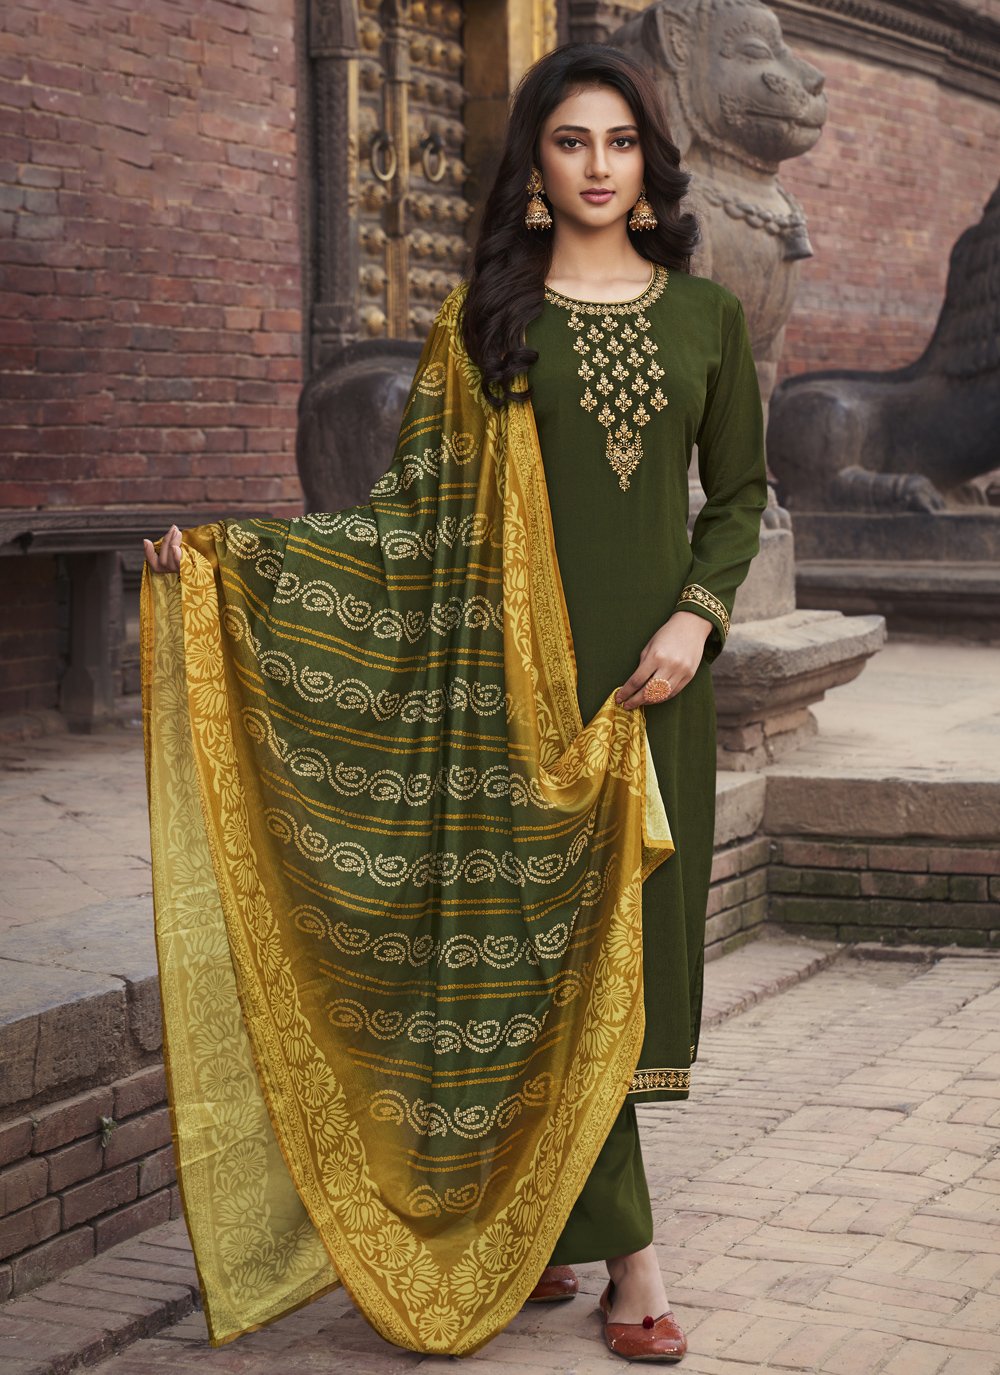 Readymade Indian Dress Pakistani Salwar kameez clothing designer replica tunic kurta saree anarkali Imrozia inspired